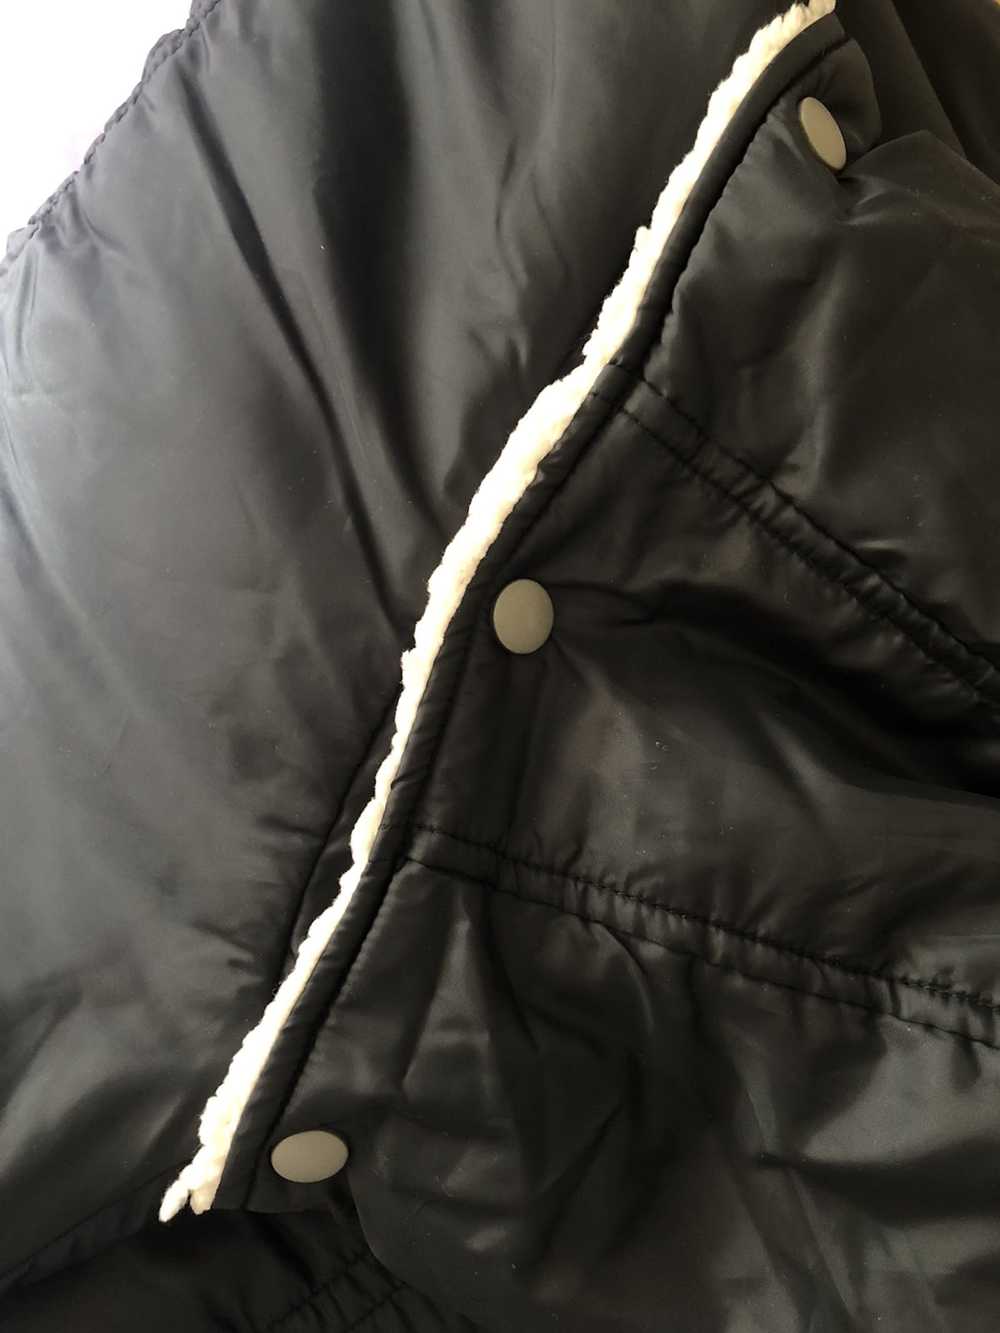 Converse Knit puffy light jacket womens large size - image 6